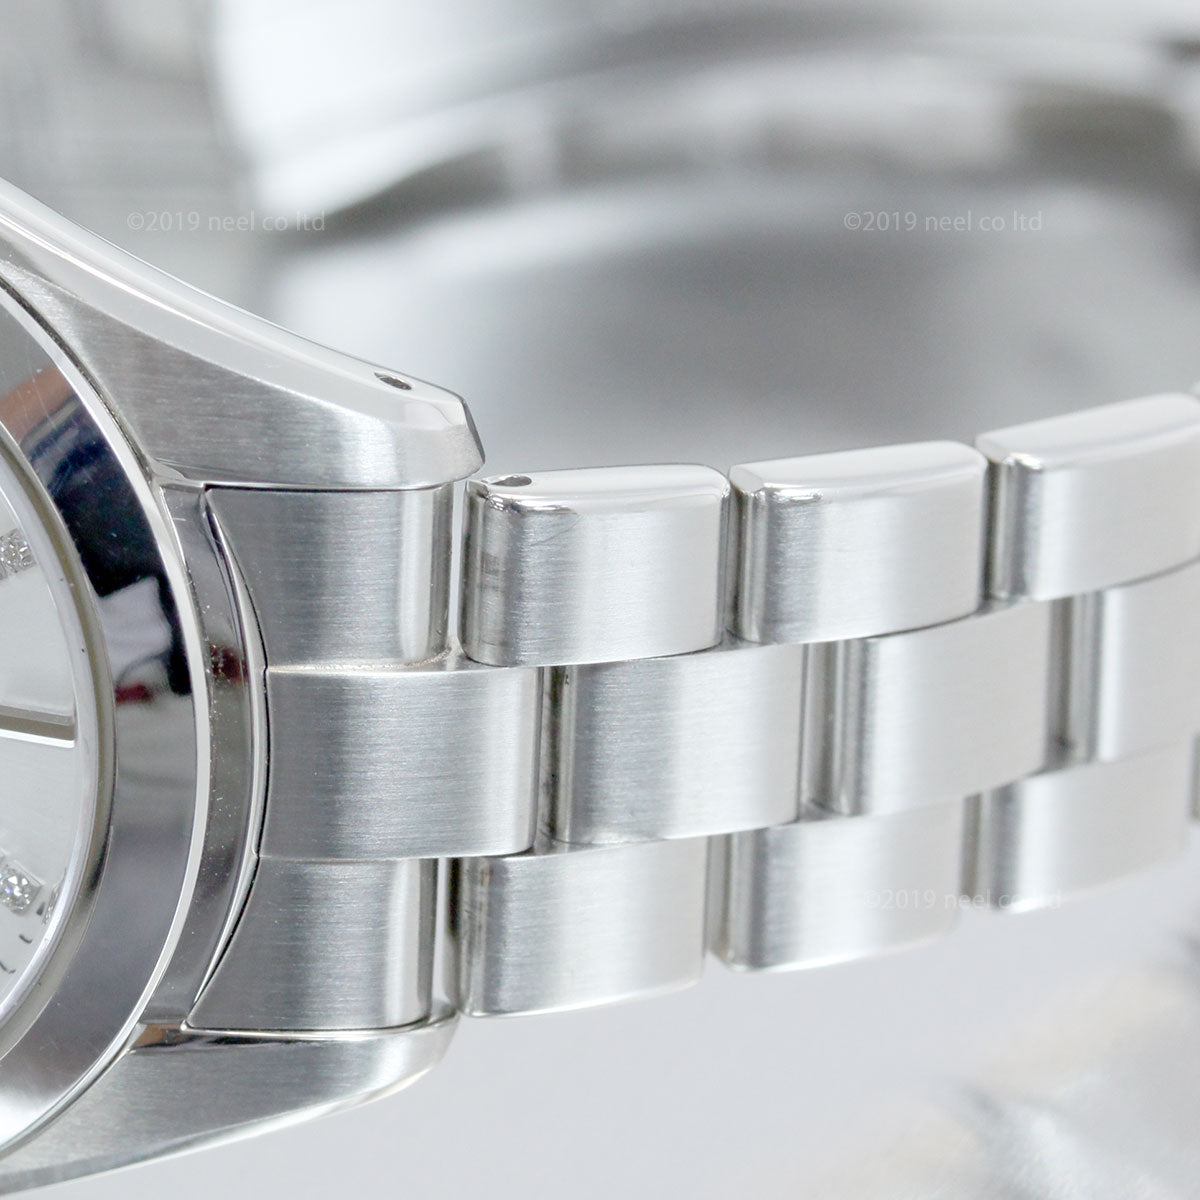 【36回分割手数料無料！】グランドセイコー GRAND SEIKO 腕時計 メンズ レディース SBGA437 STGF273 ペアモデル【正規品】